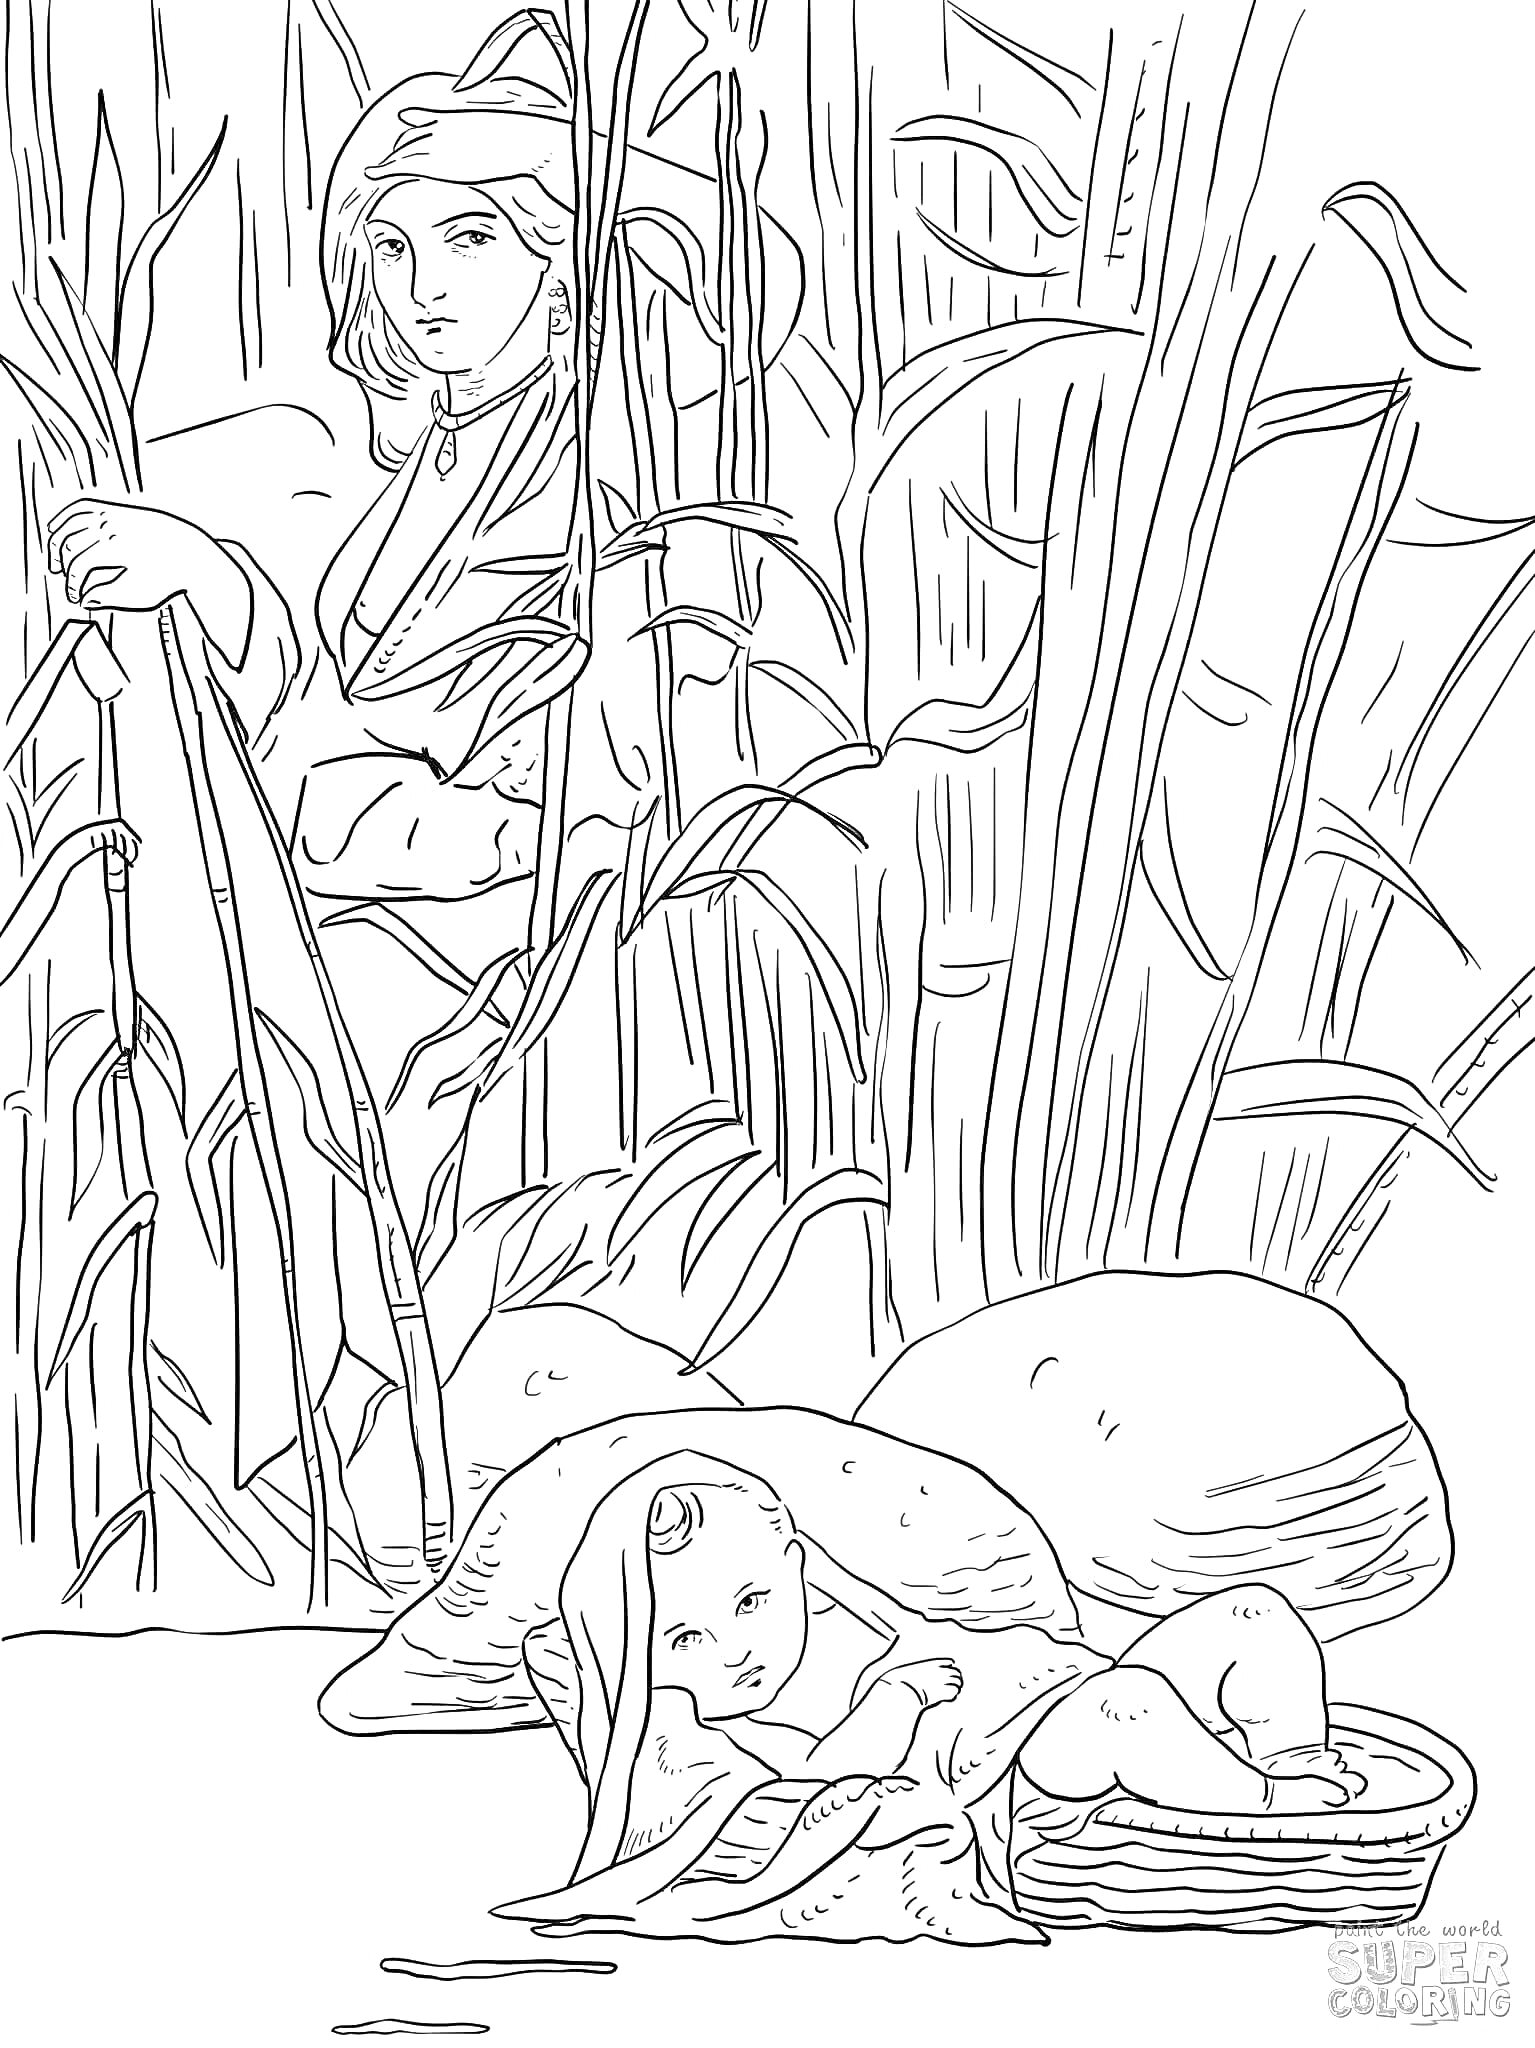 Младенец Моисей в корзине на реке с женщиной на фоне среди тростника